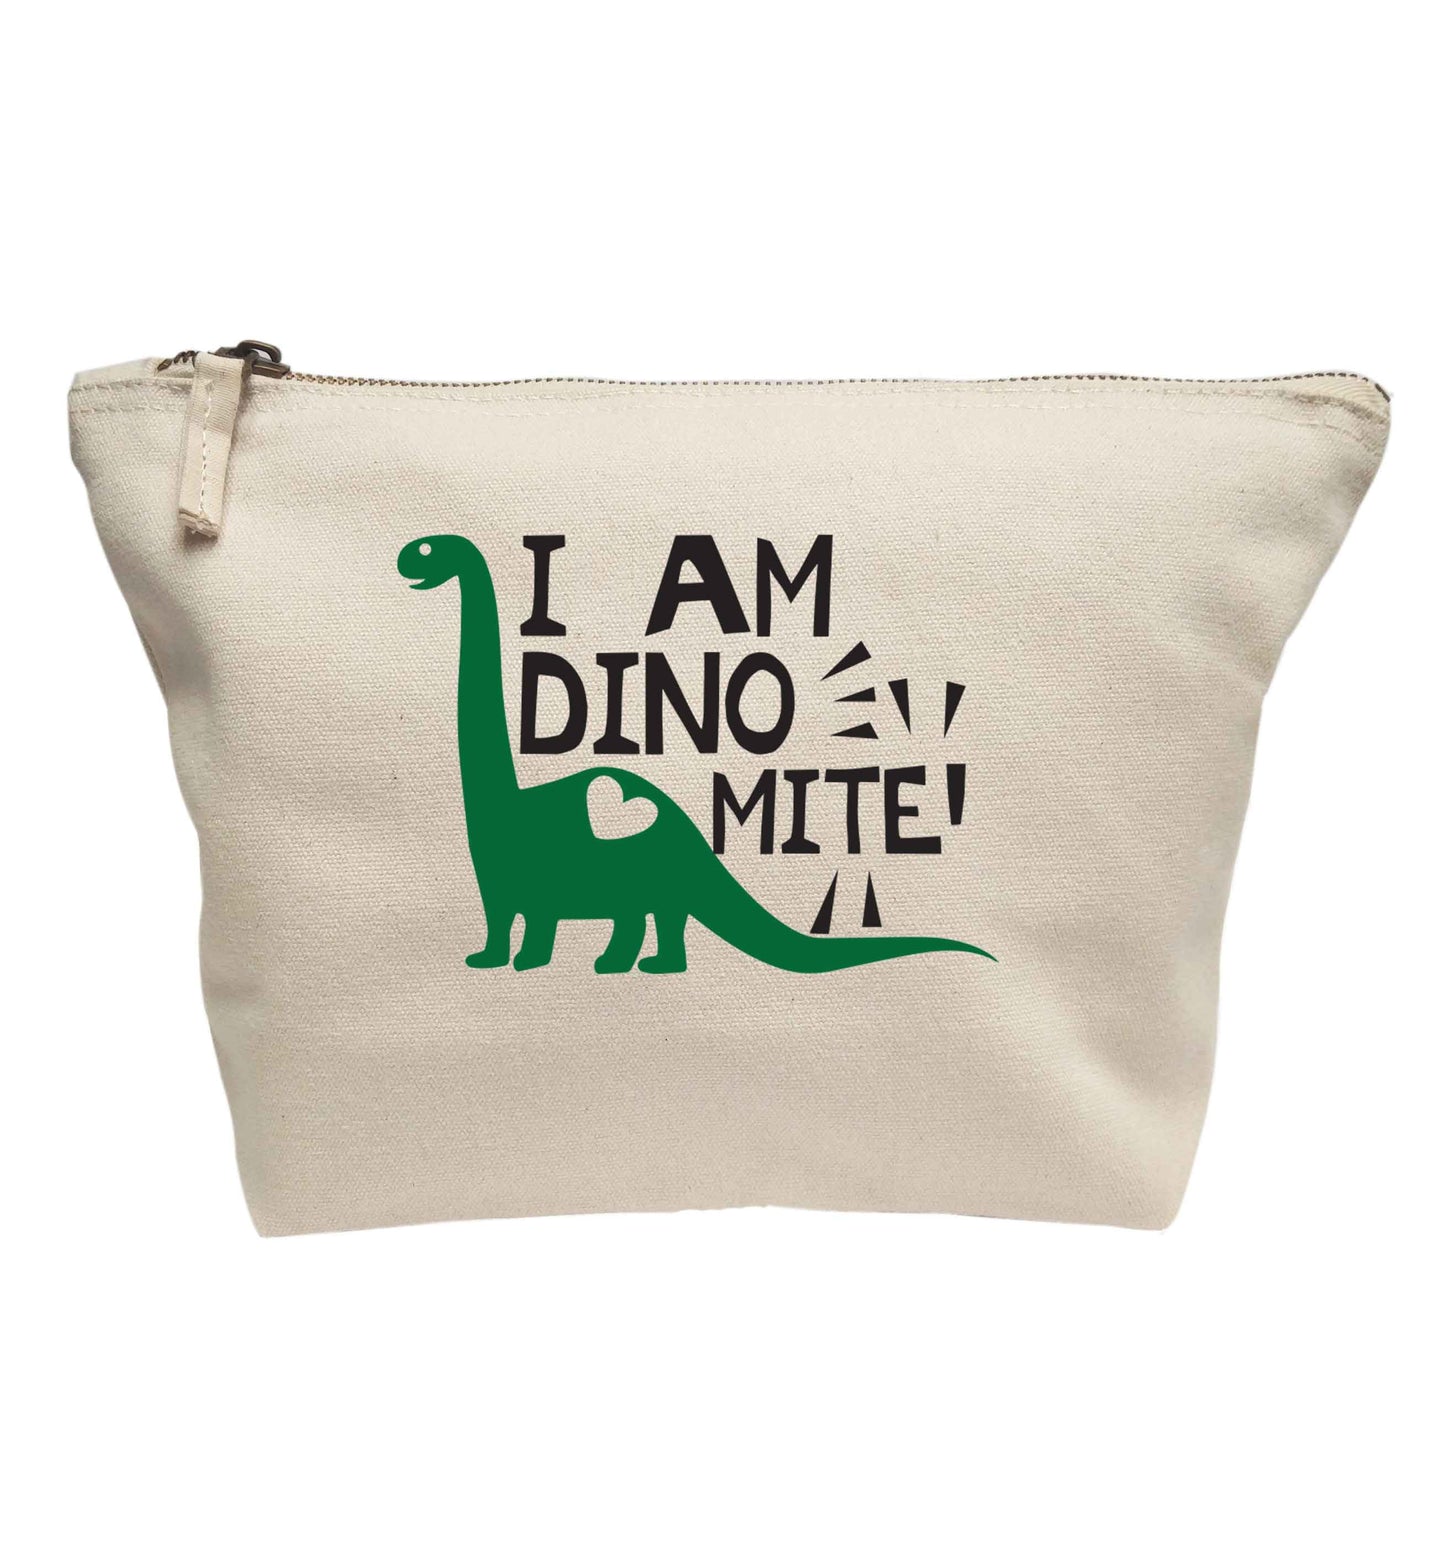 I am dinomite! | makeup / wash bag